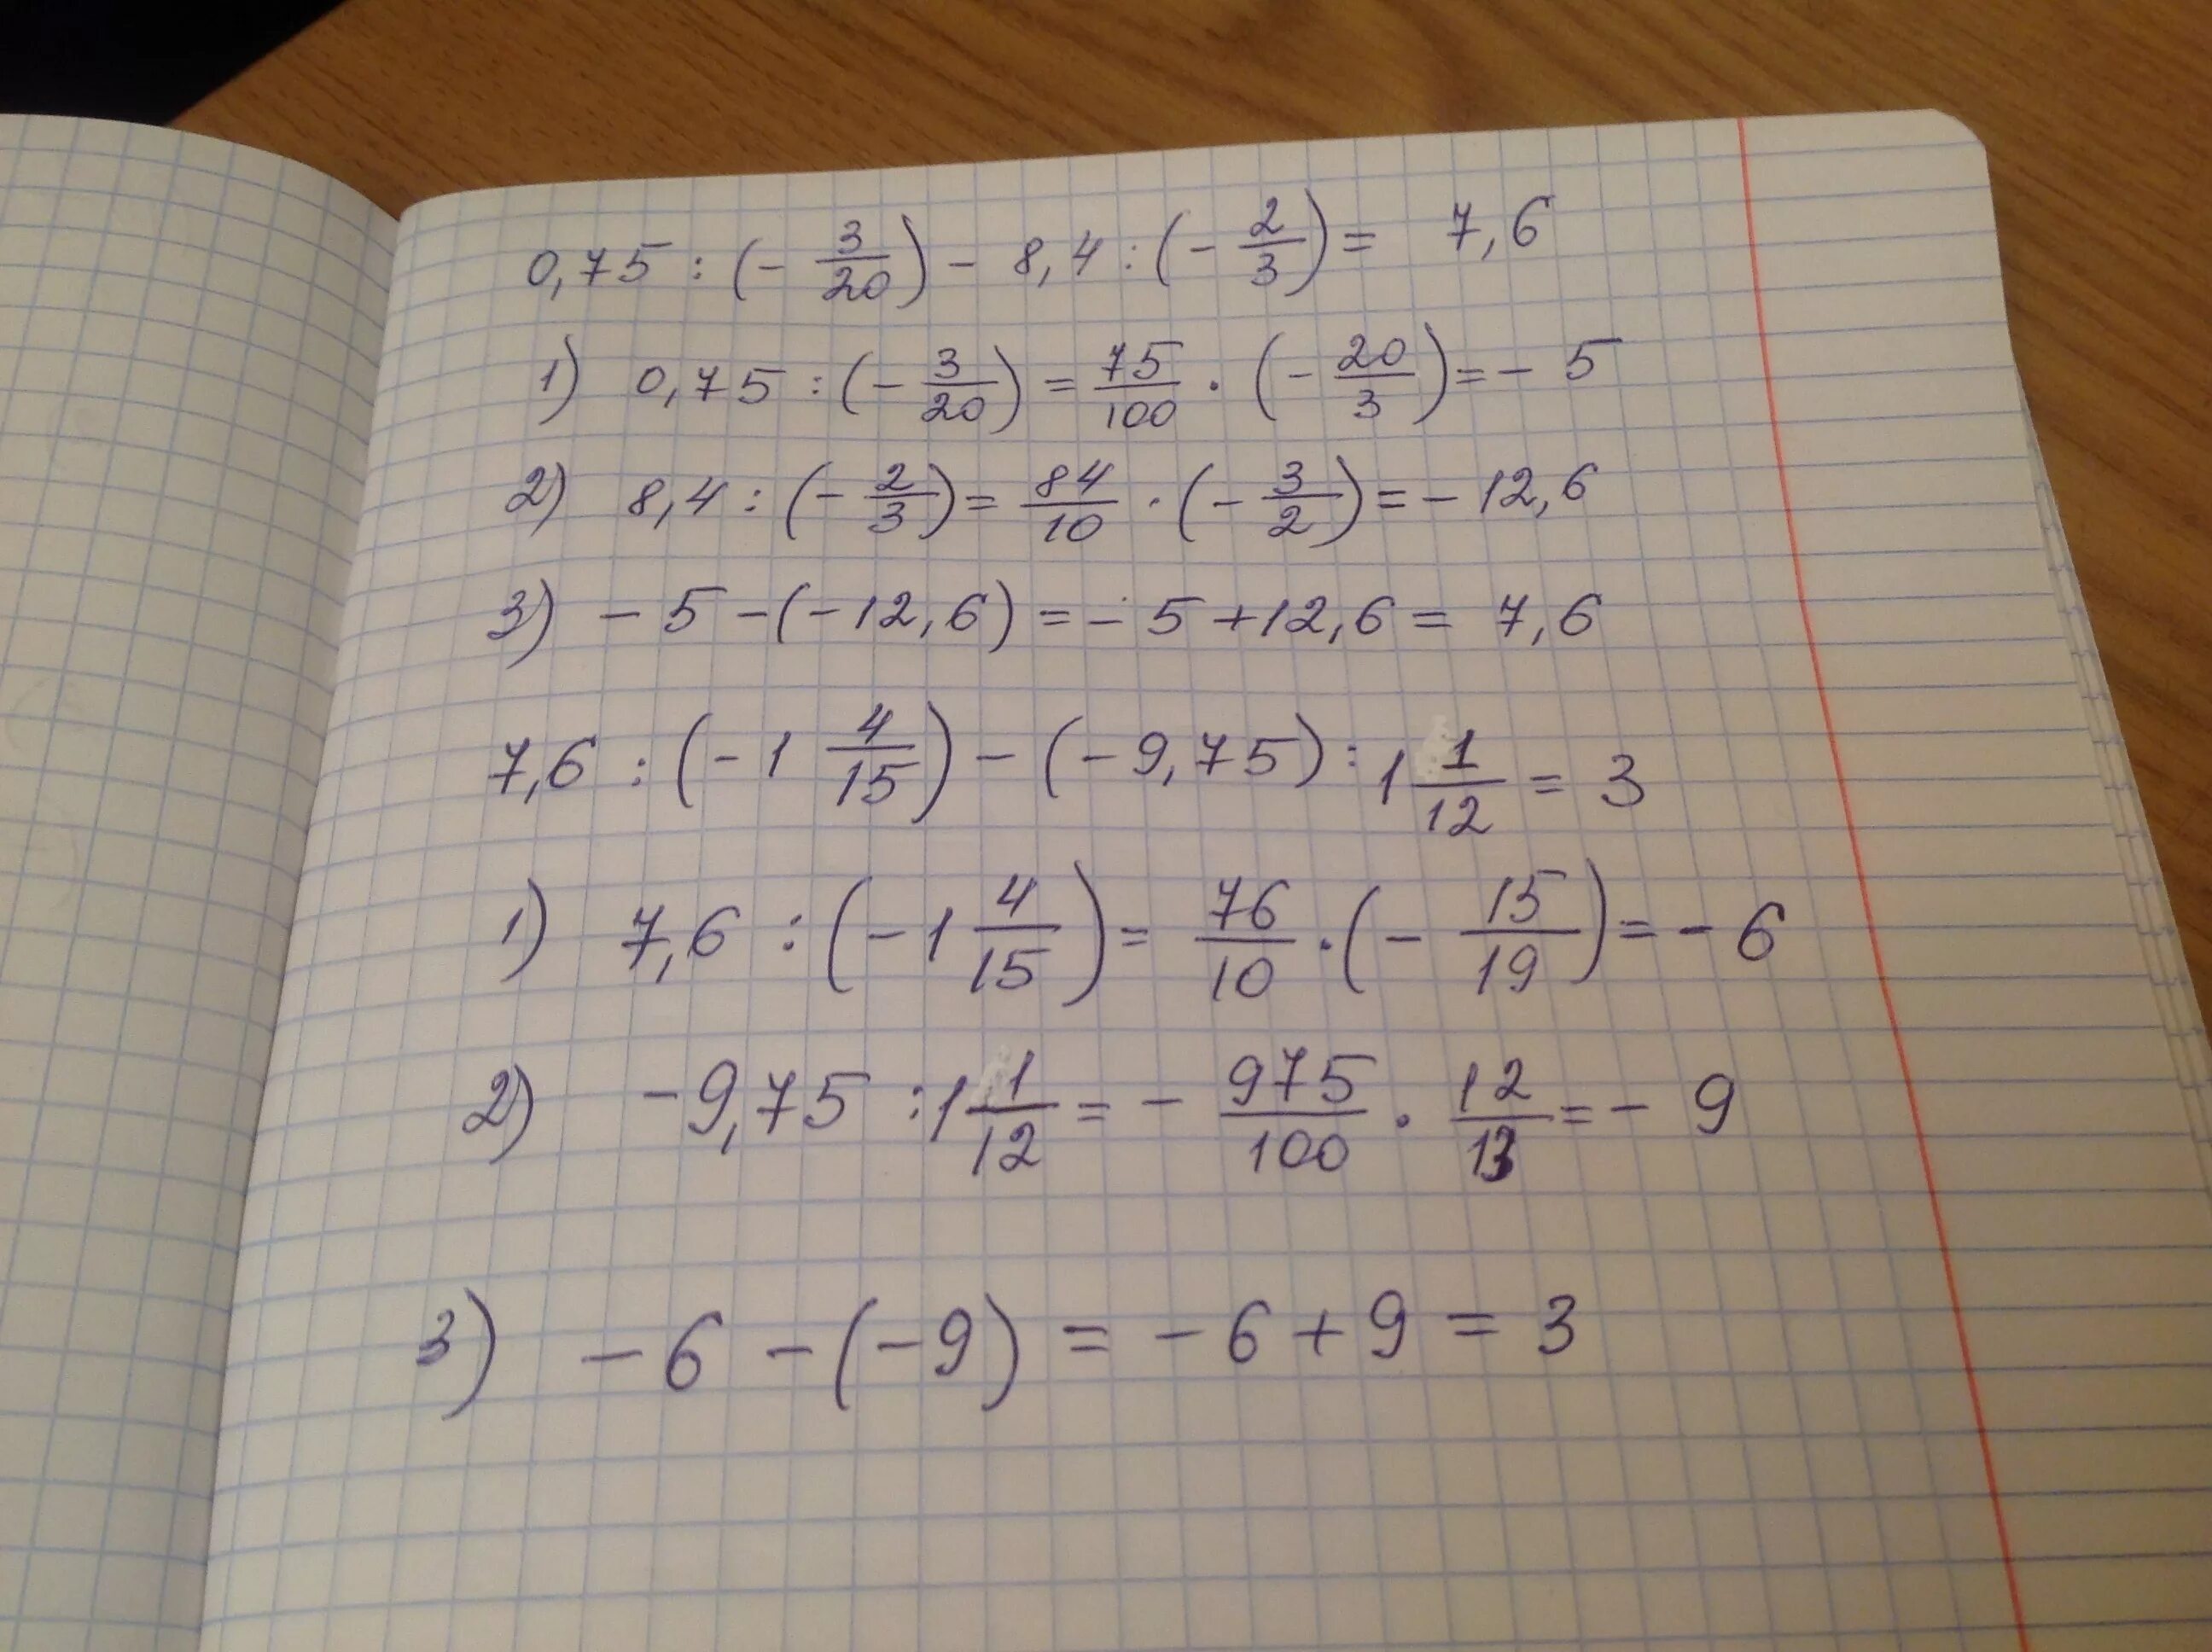 Решение 2 75 1 1 2. 21/4-6(Х+1/12)=0,5х-(х-1/2). 3 0 75х+5/6 -2х 1/4х+2 5. 9,9х-6, 17-8, 17х=0, 75. Вычислить (2,5+1/4)•0,6/(6,6-6/2/3.